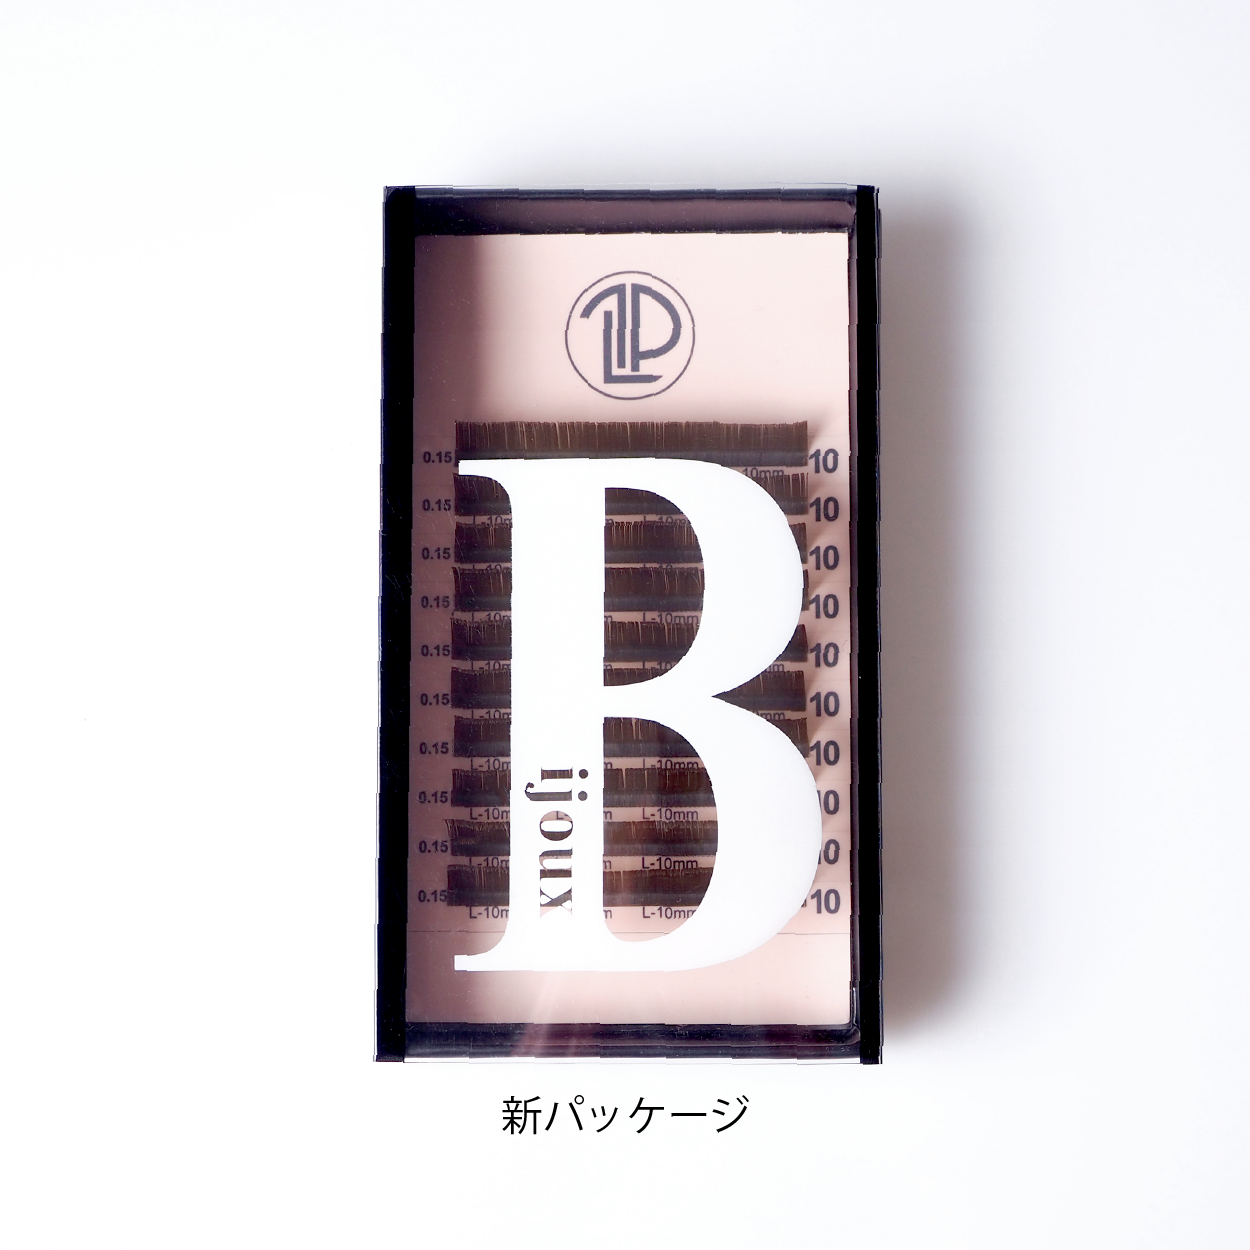 【MIX】Bijoux オリーブグリーン / 0.15mm